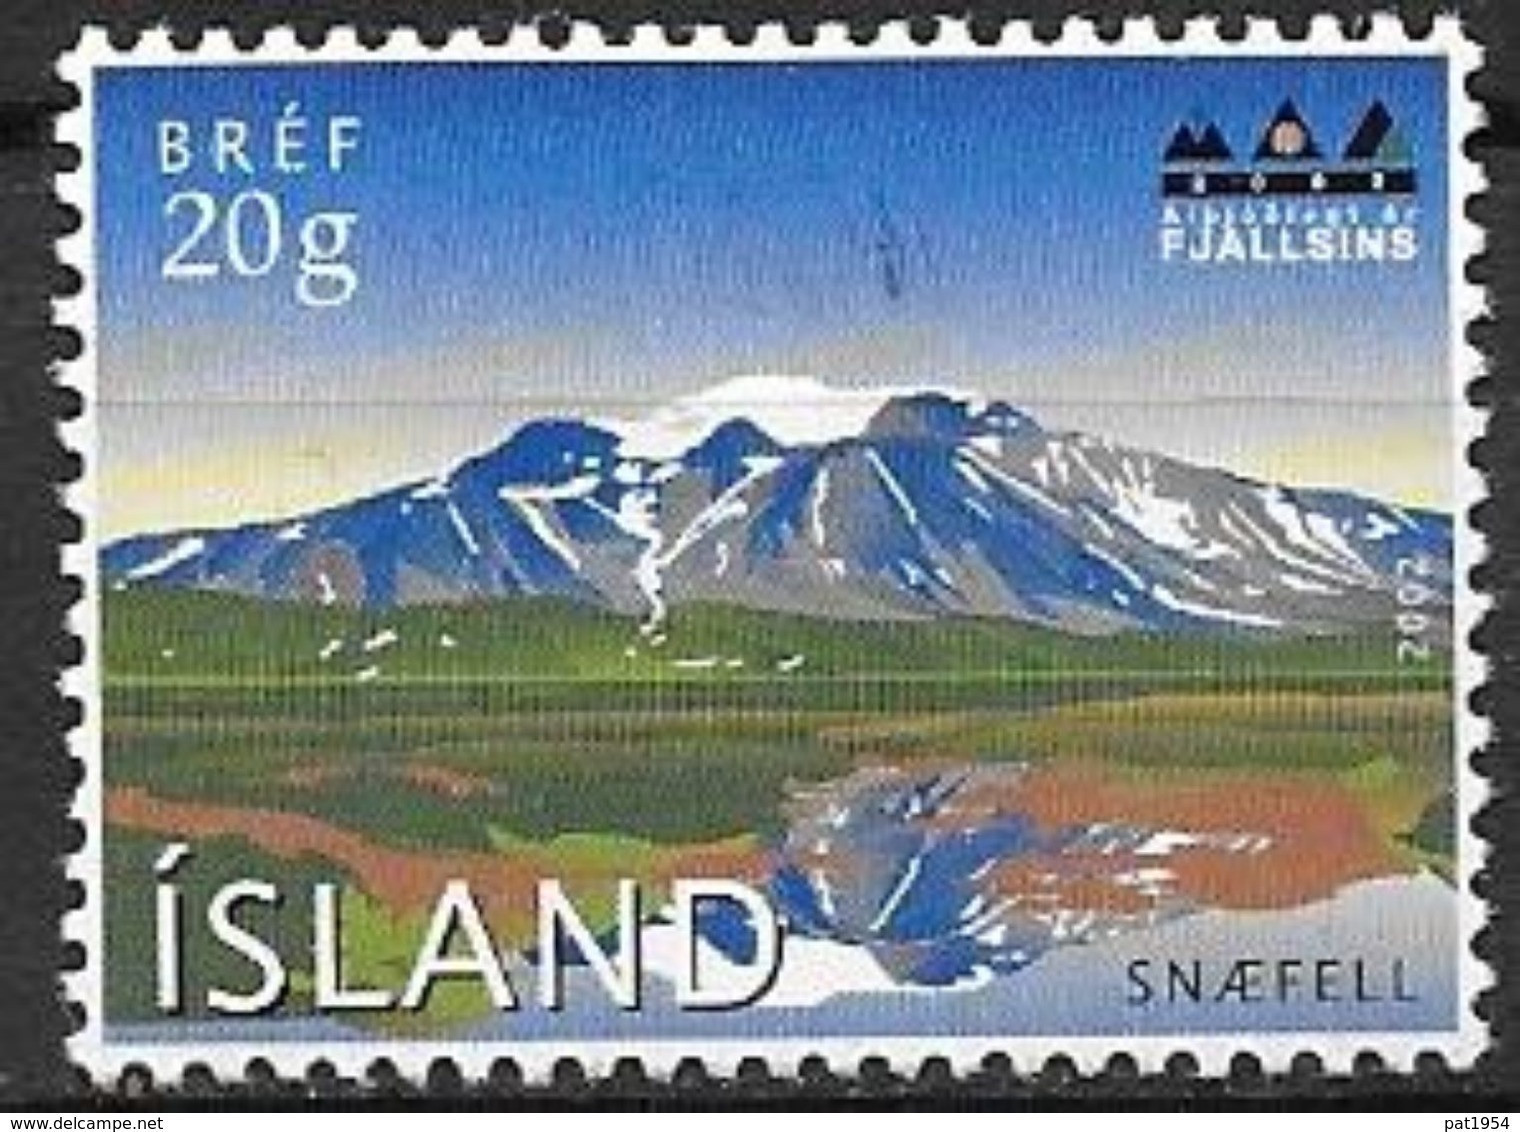 Islande 2002 N°932 Neuf** Année De La Montagne Snaefel - Nuevos